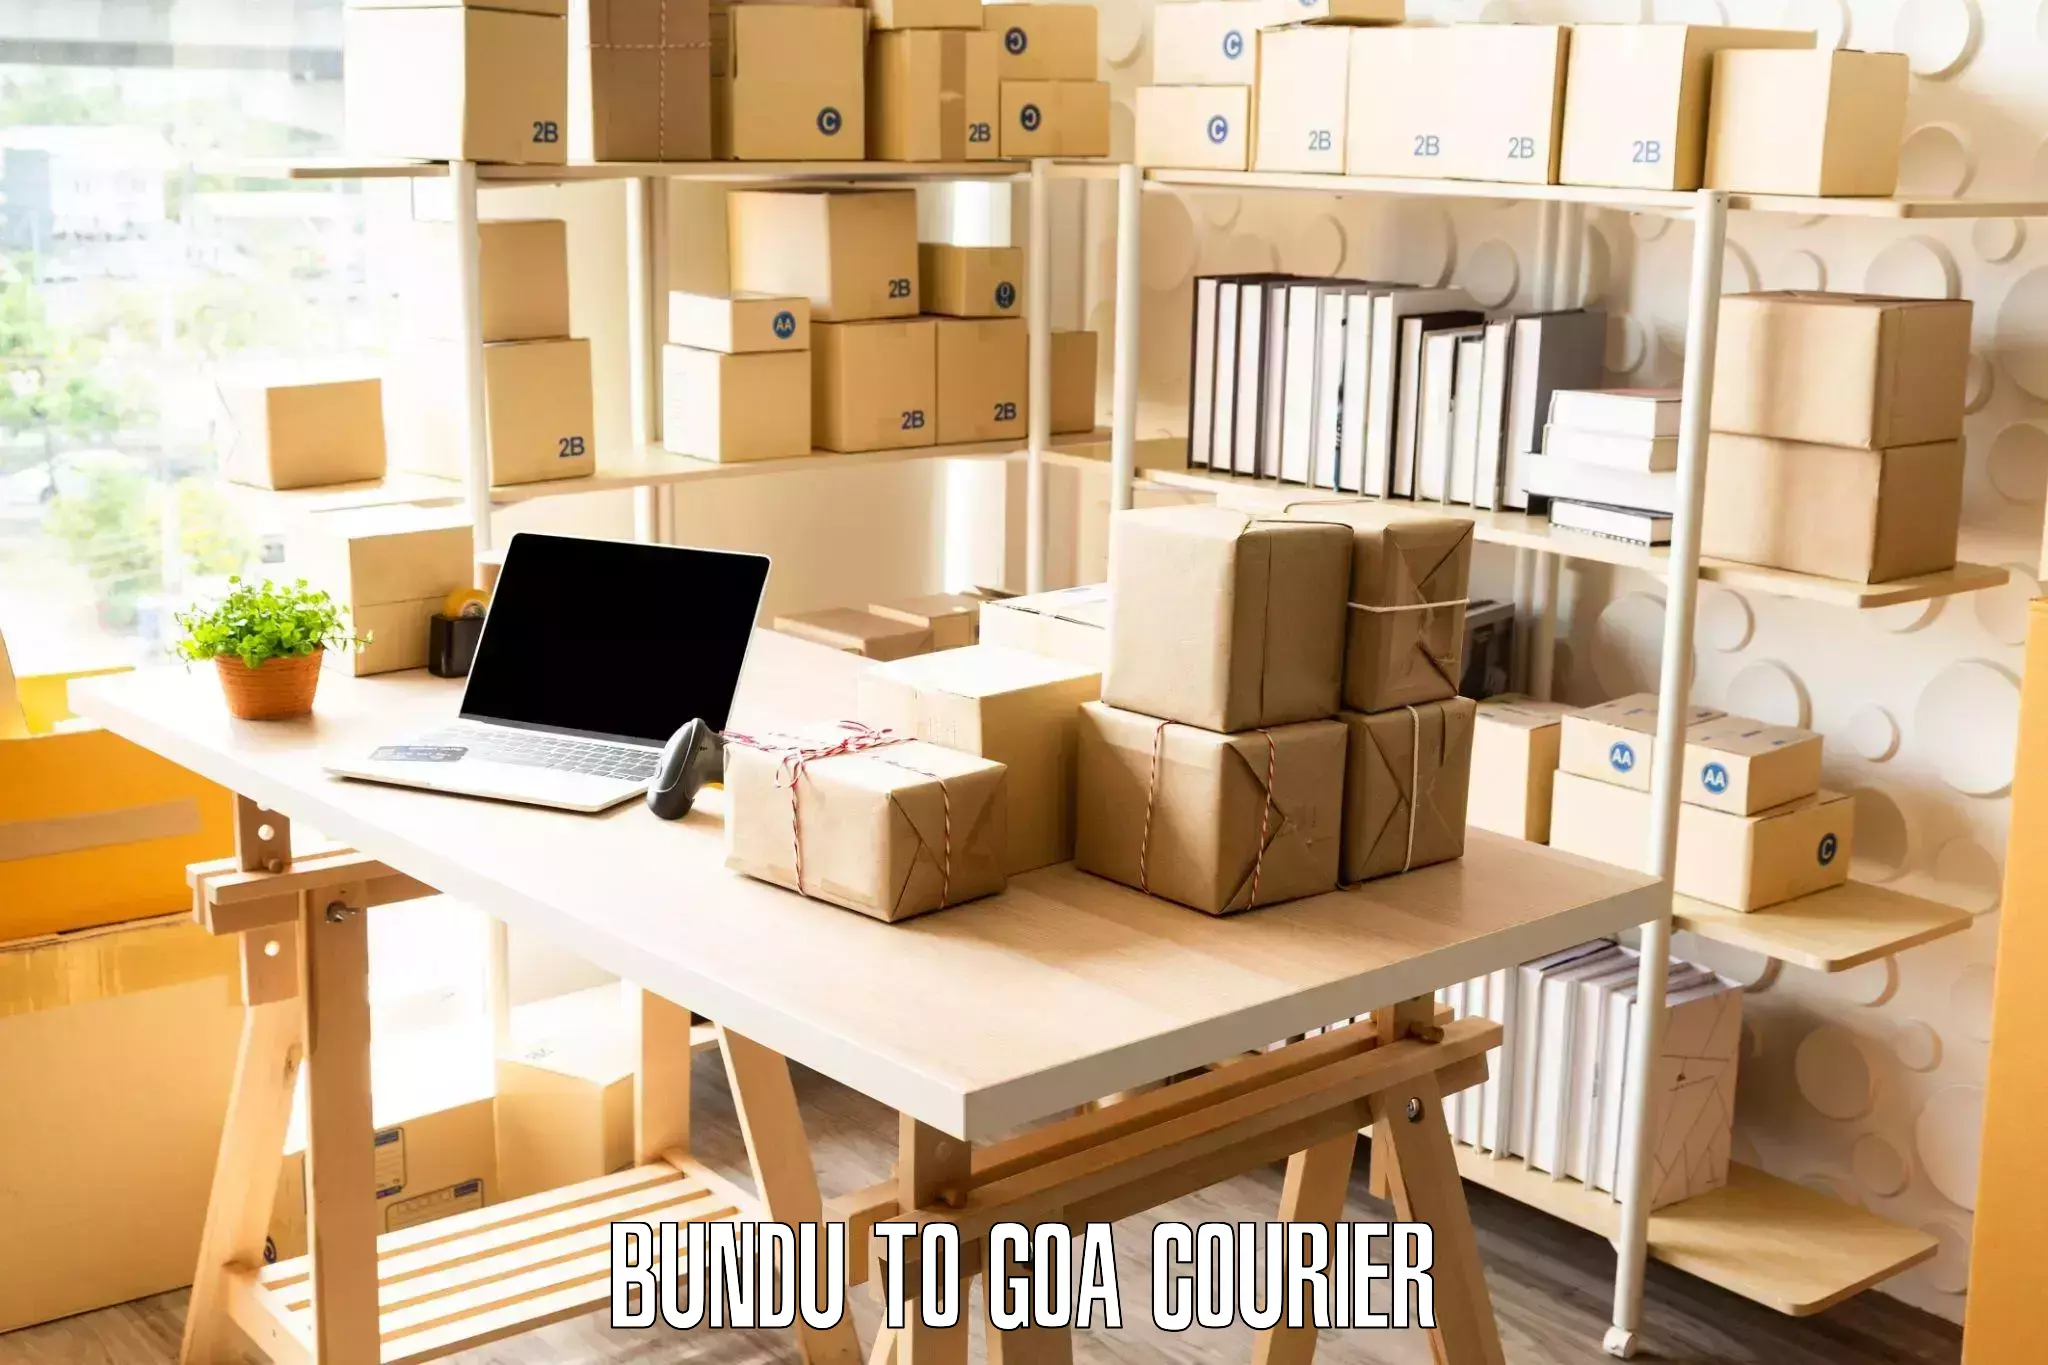 Furniture moving assistance Bundu to Goa